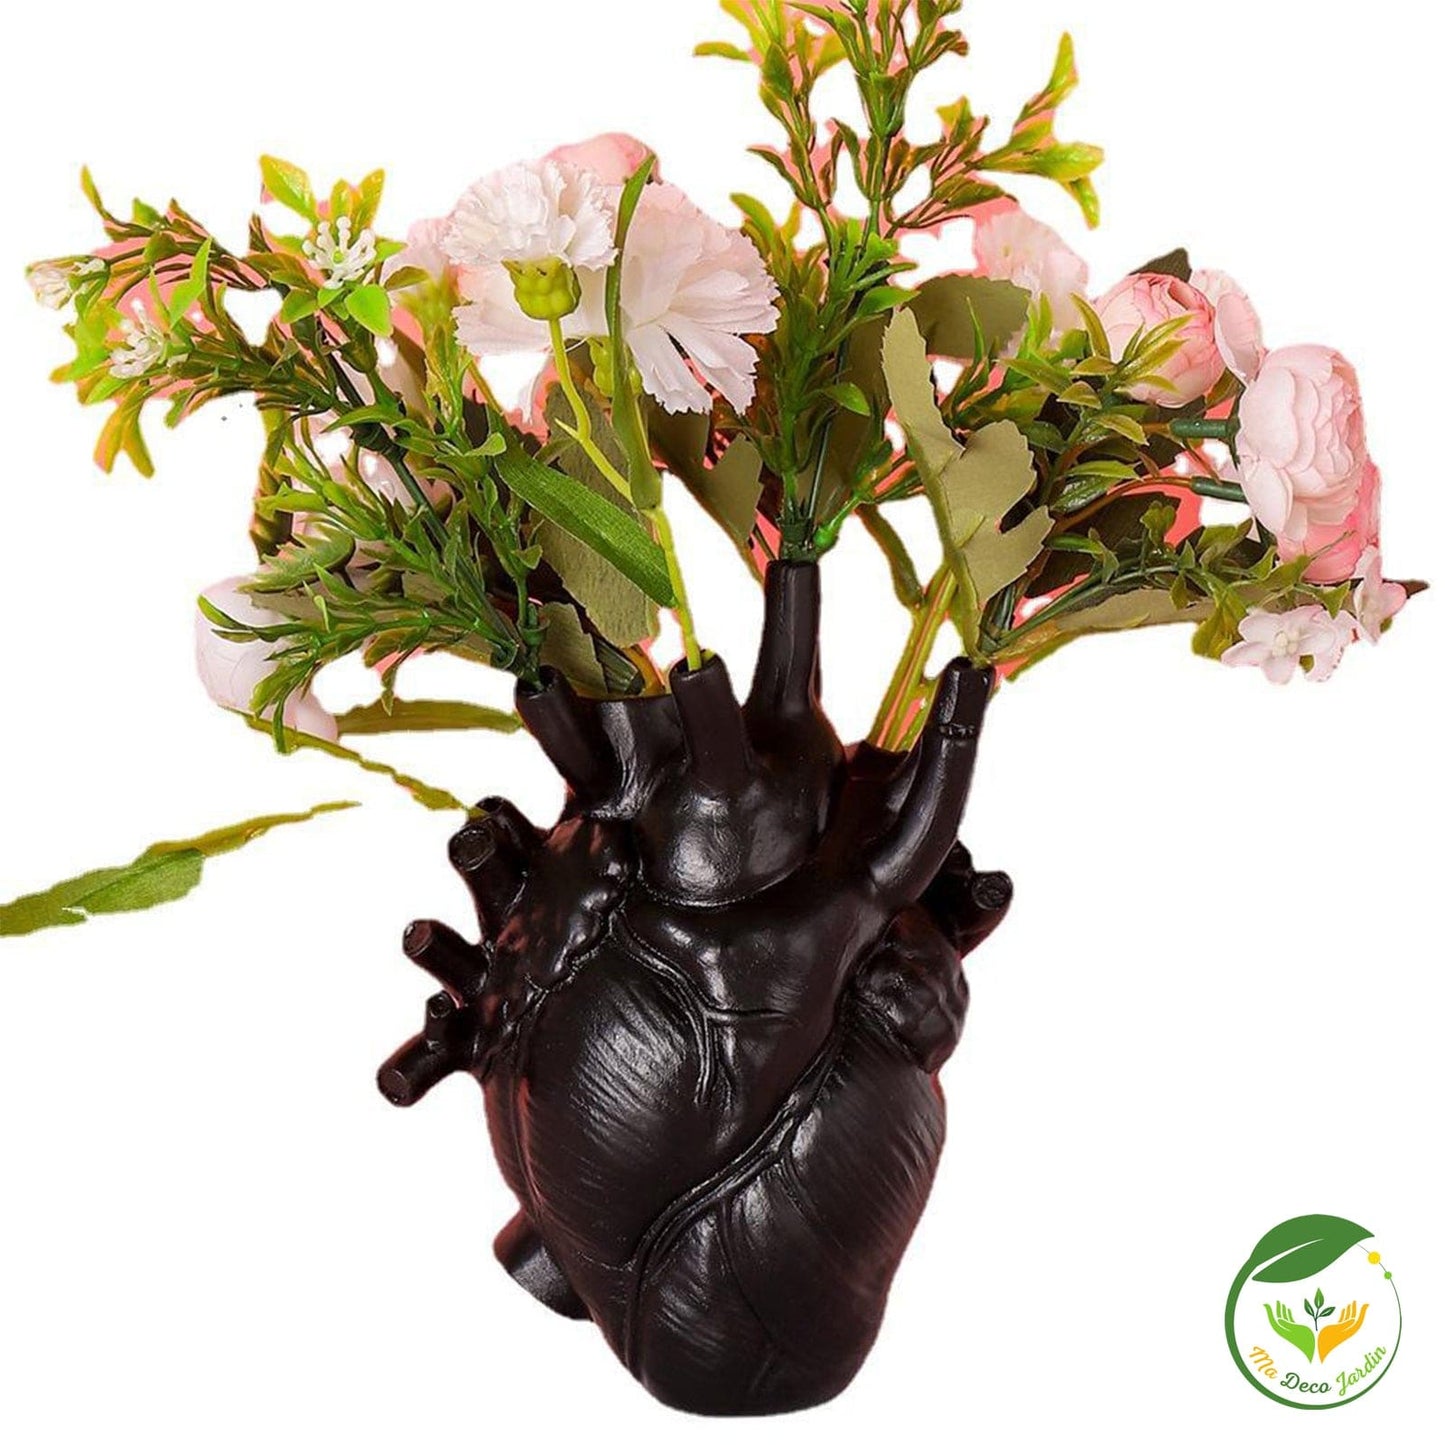 Vase à fleurs en forme de cœur - Premium Pot de fleurs from Ma deco Jardin - Just $39.90! Shop now at Ma deco Jardin